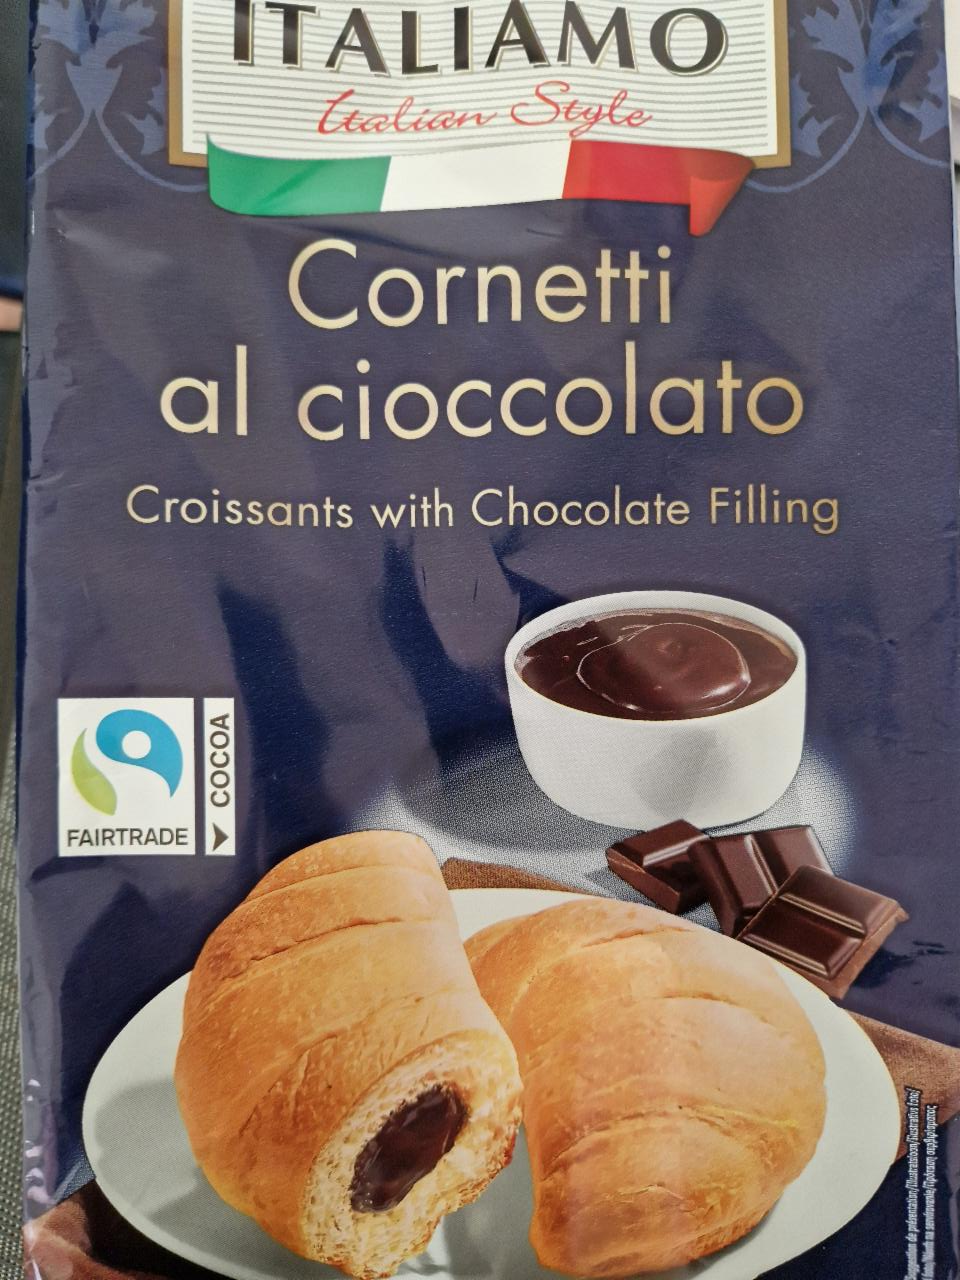 Fotografie - Cornetti al cioccolato Croissant with Chocolate Filling Italiamo